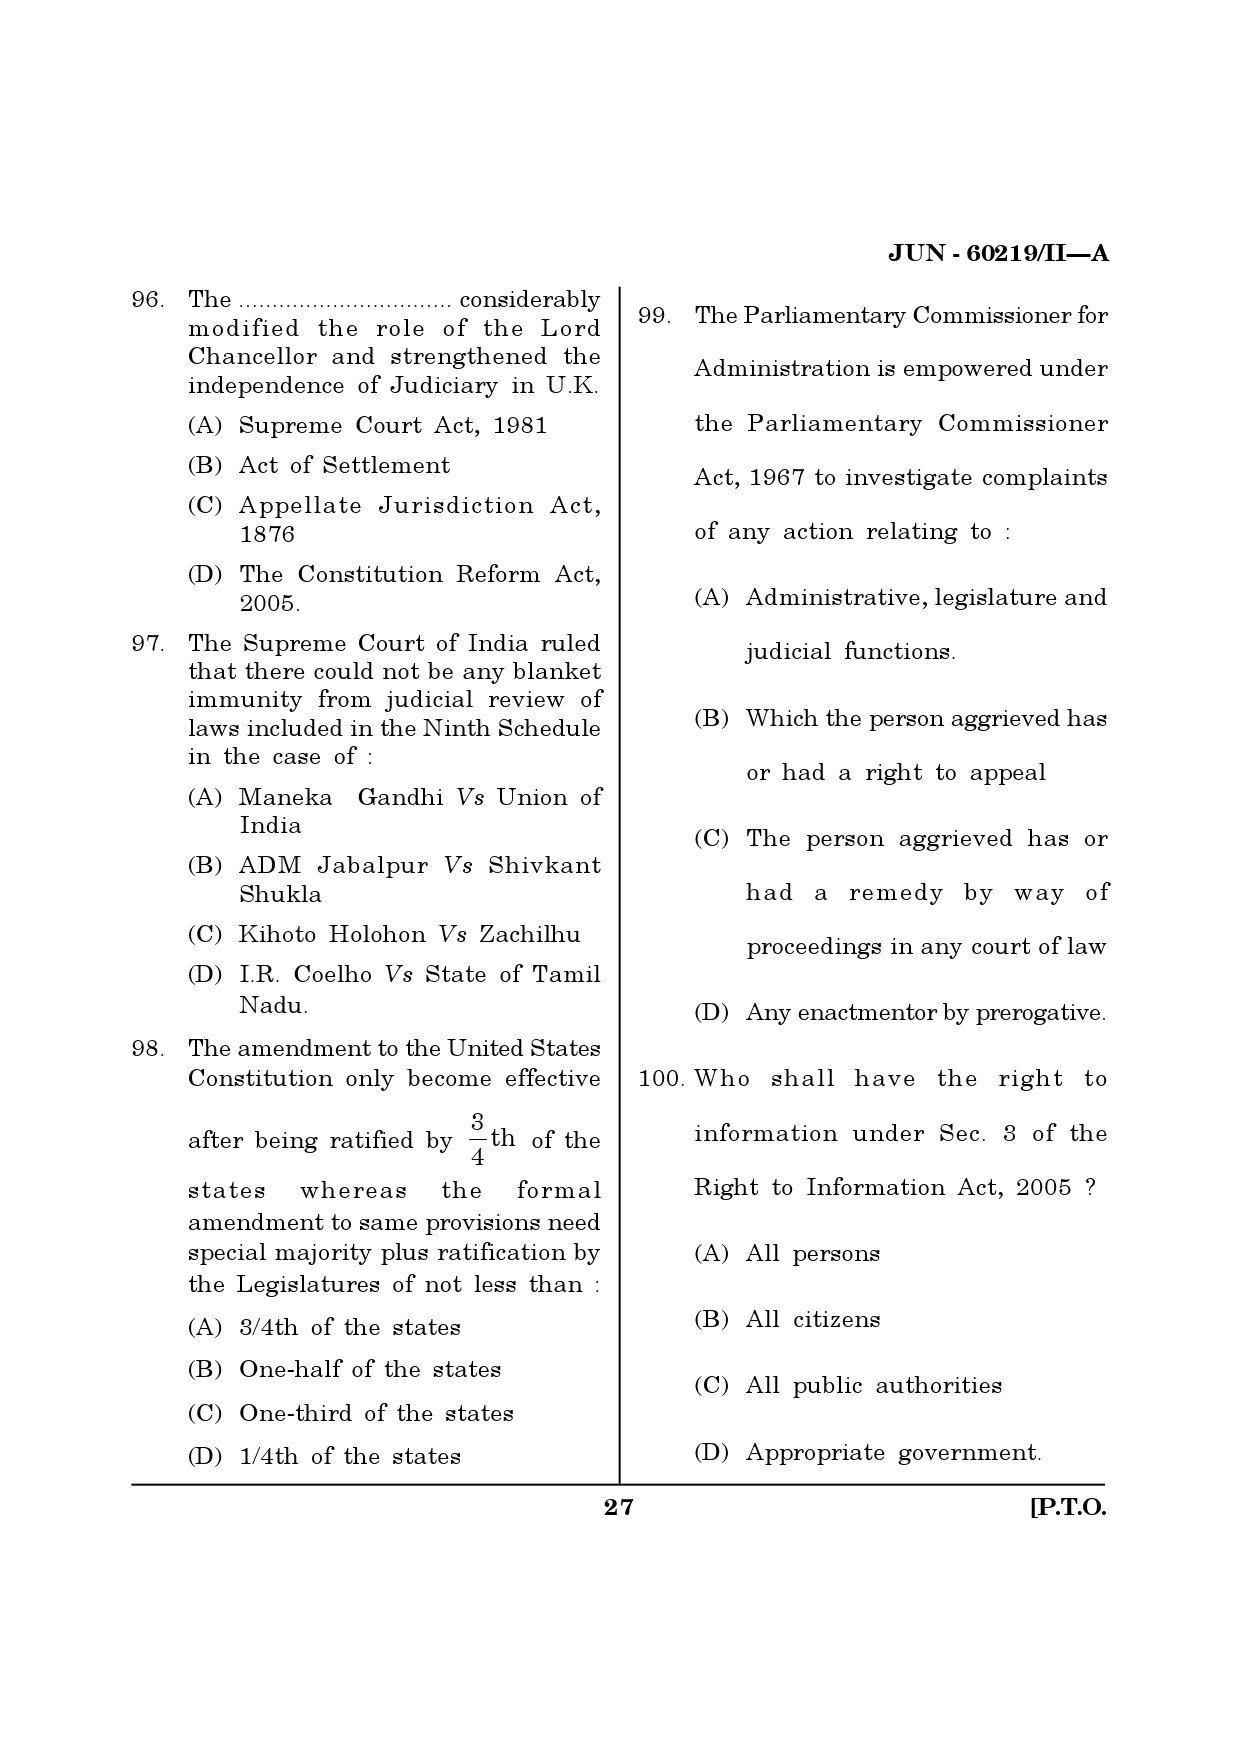 Maharashtra SET Law Question Paper II June 2019 26